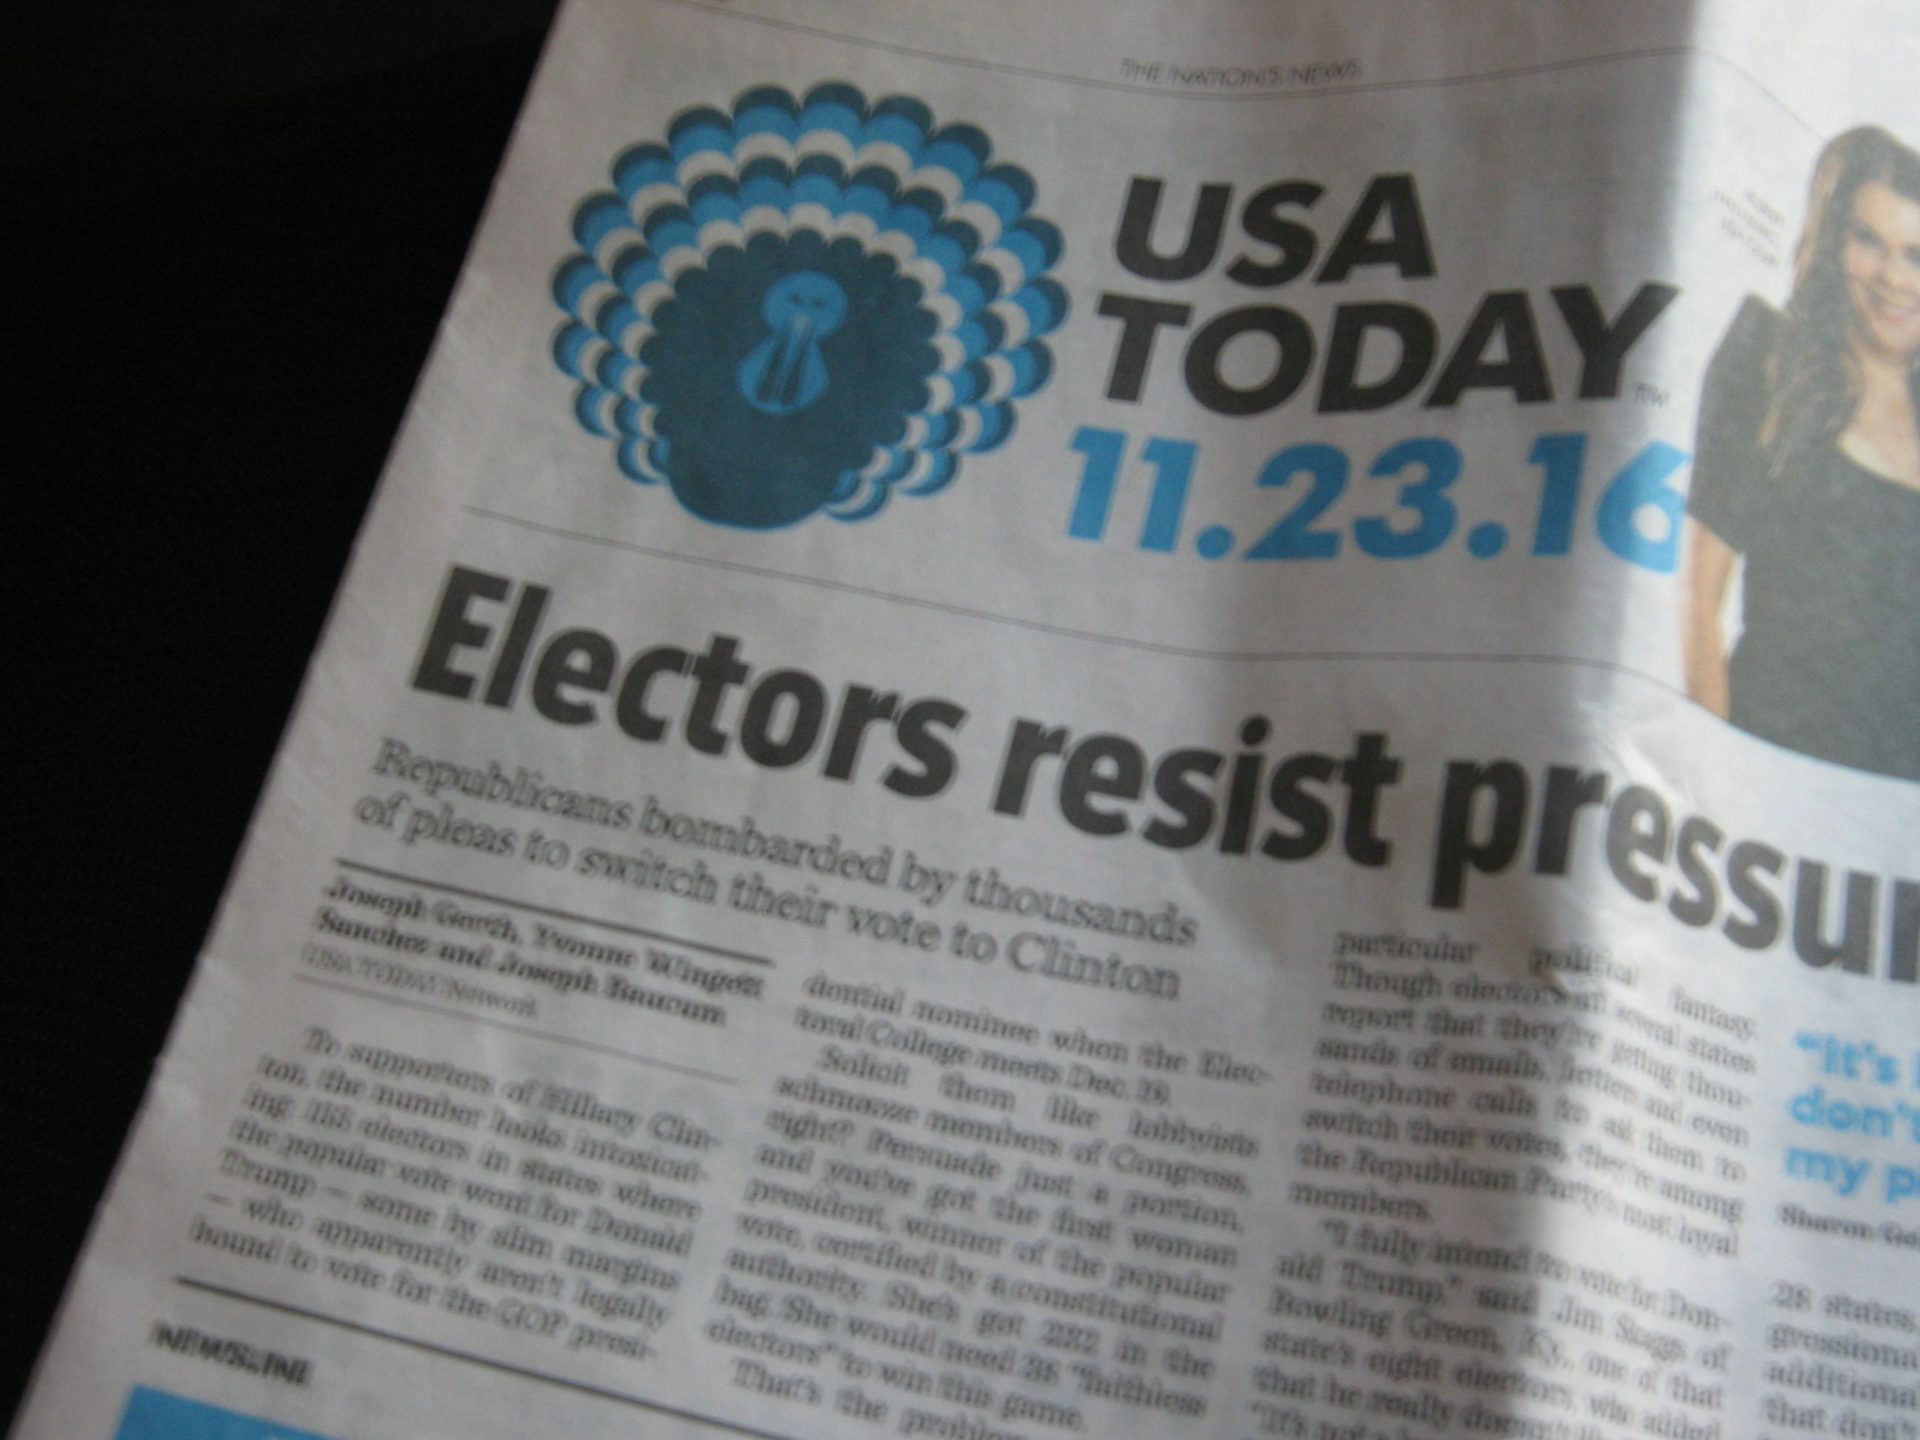 Titelbild der Tageszeitung "USA Today" vom 23. November 2016. Foto: Elisabeth Aeberli